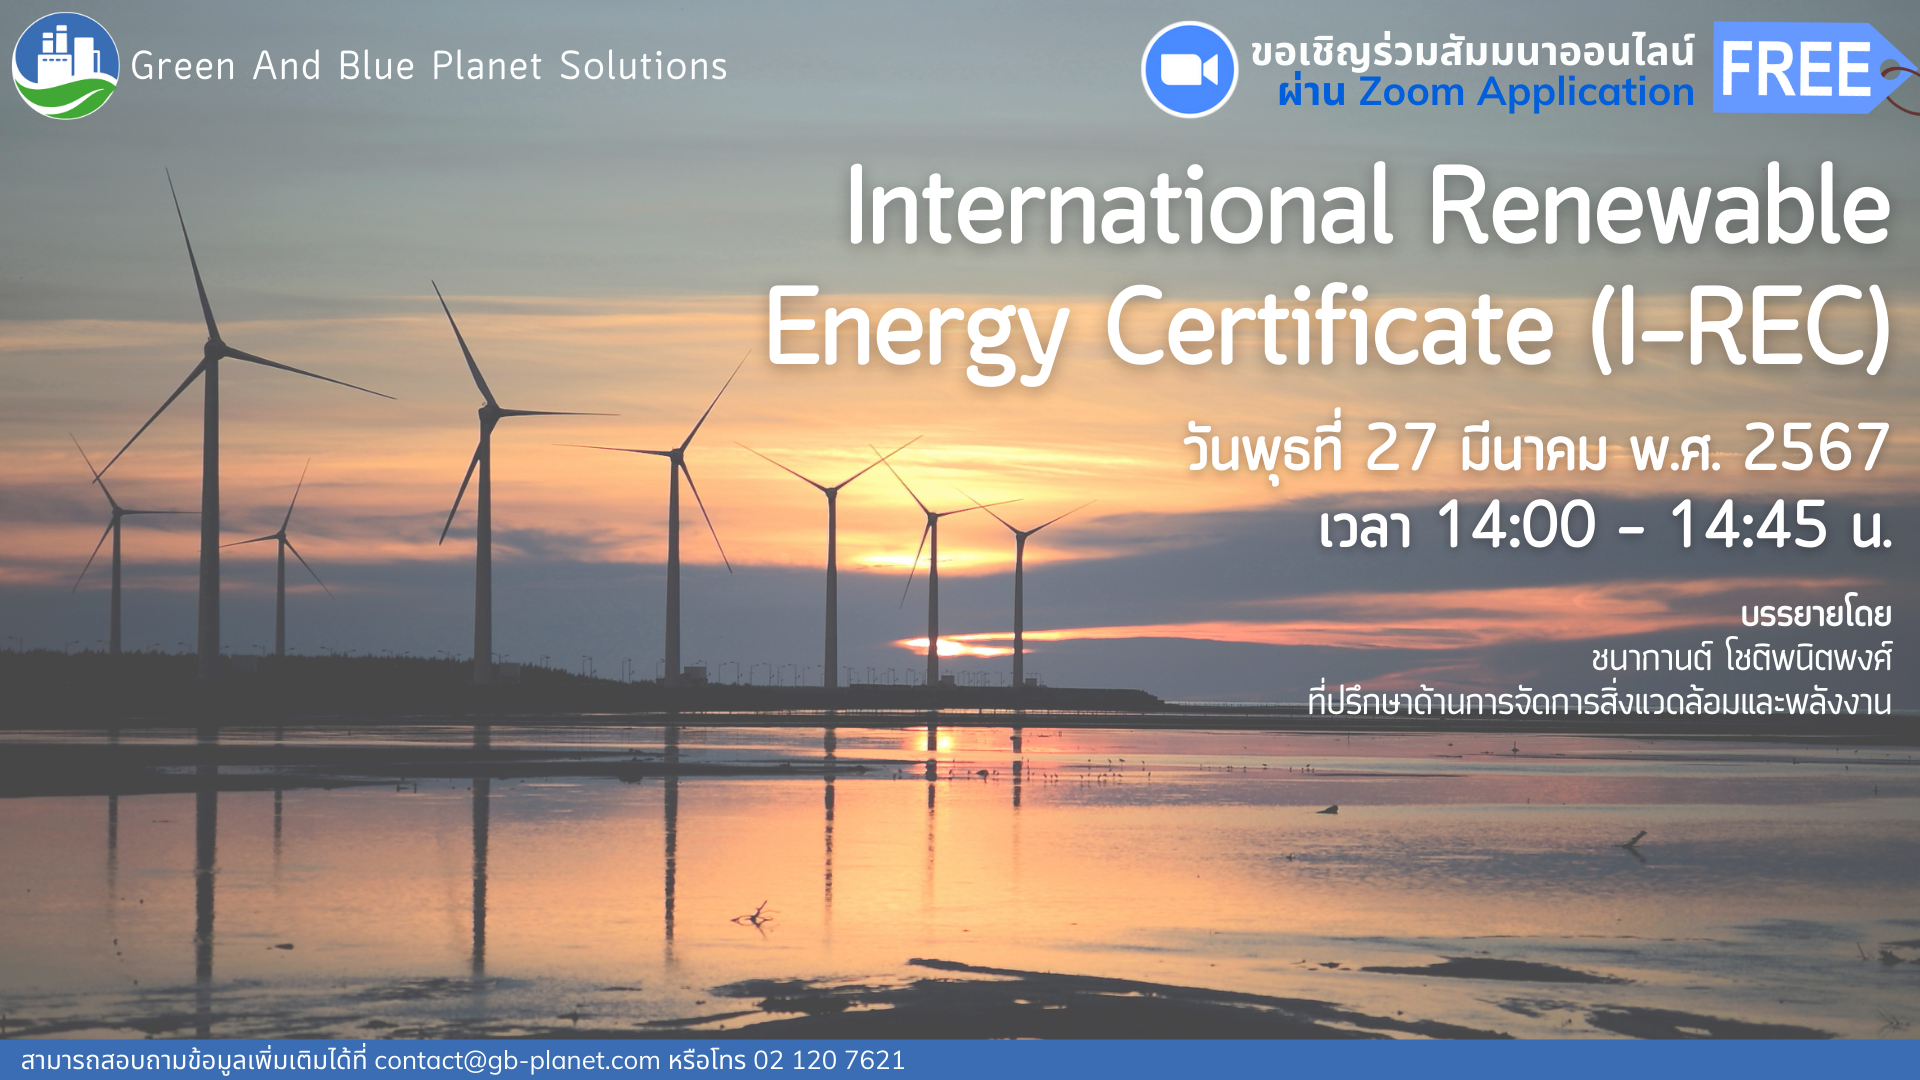 การจัดสัมมนาออนไลน์ เรื่อง International Renewable Energy Certificate (I-REC)